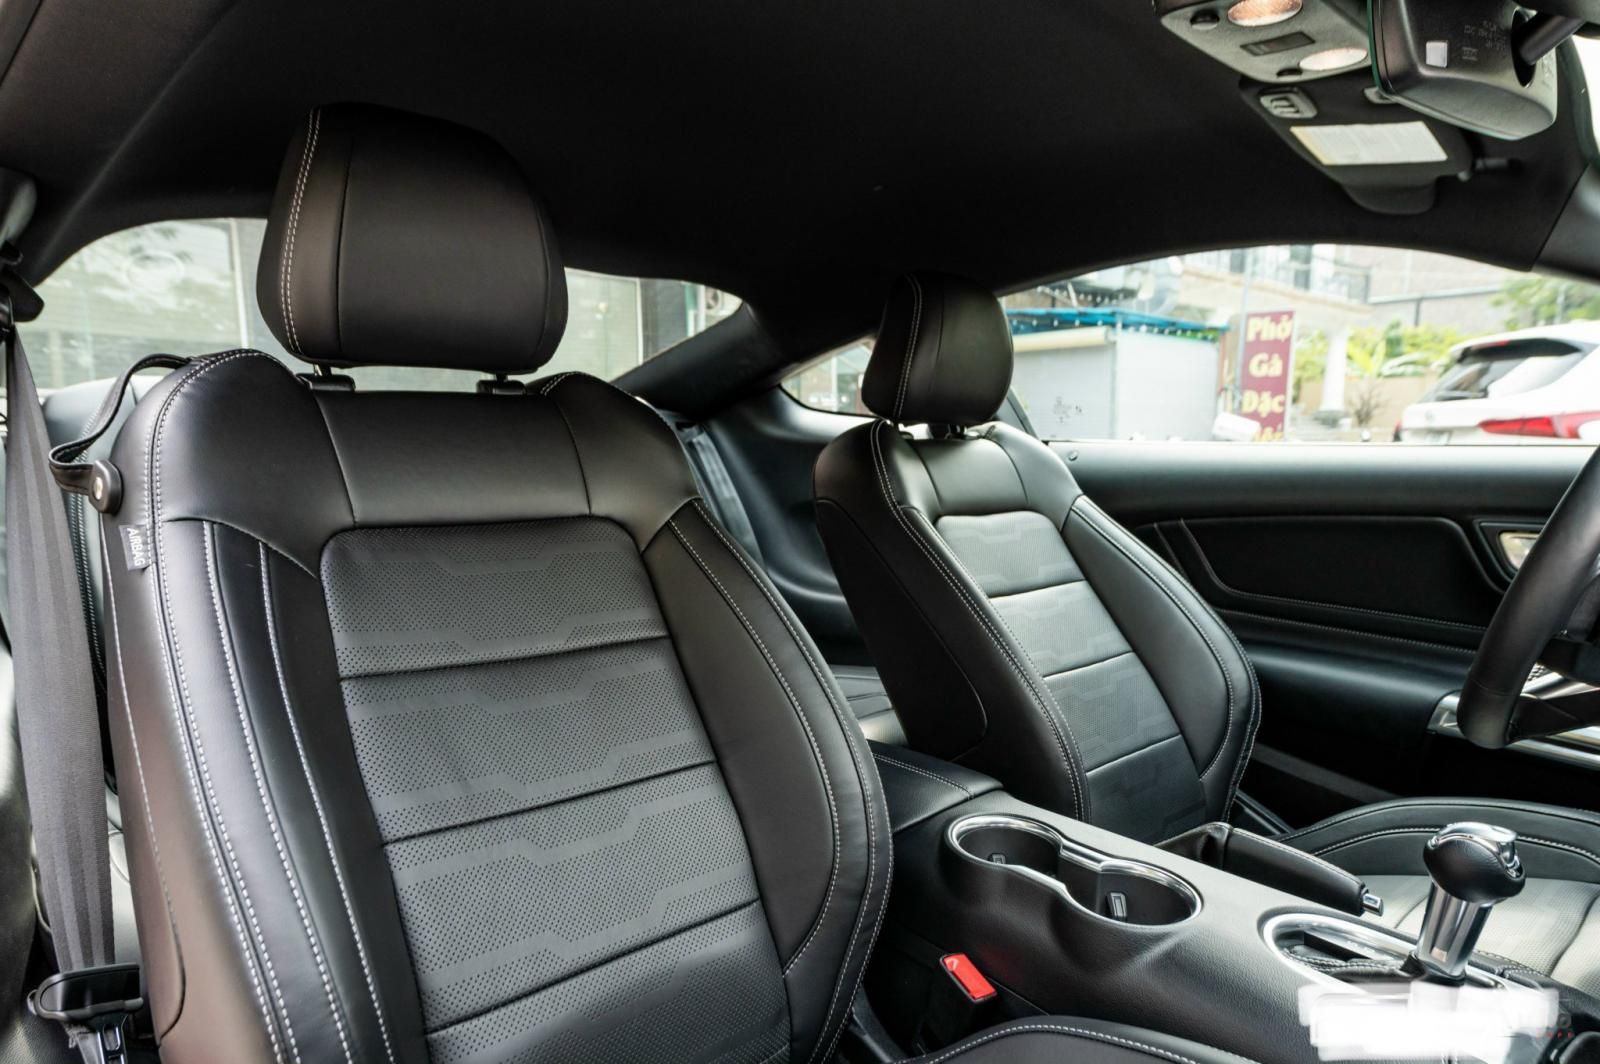 Ford Mustang 2022 - Premium Fastback, nhập Mỹ mới 100% giao ngay, xe trang bị động cơ 2.3L Ecoboost